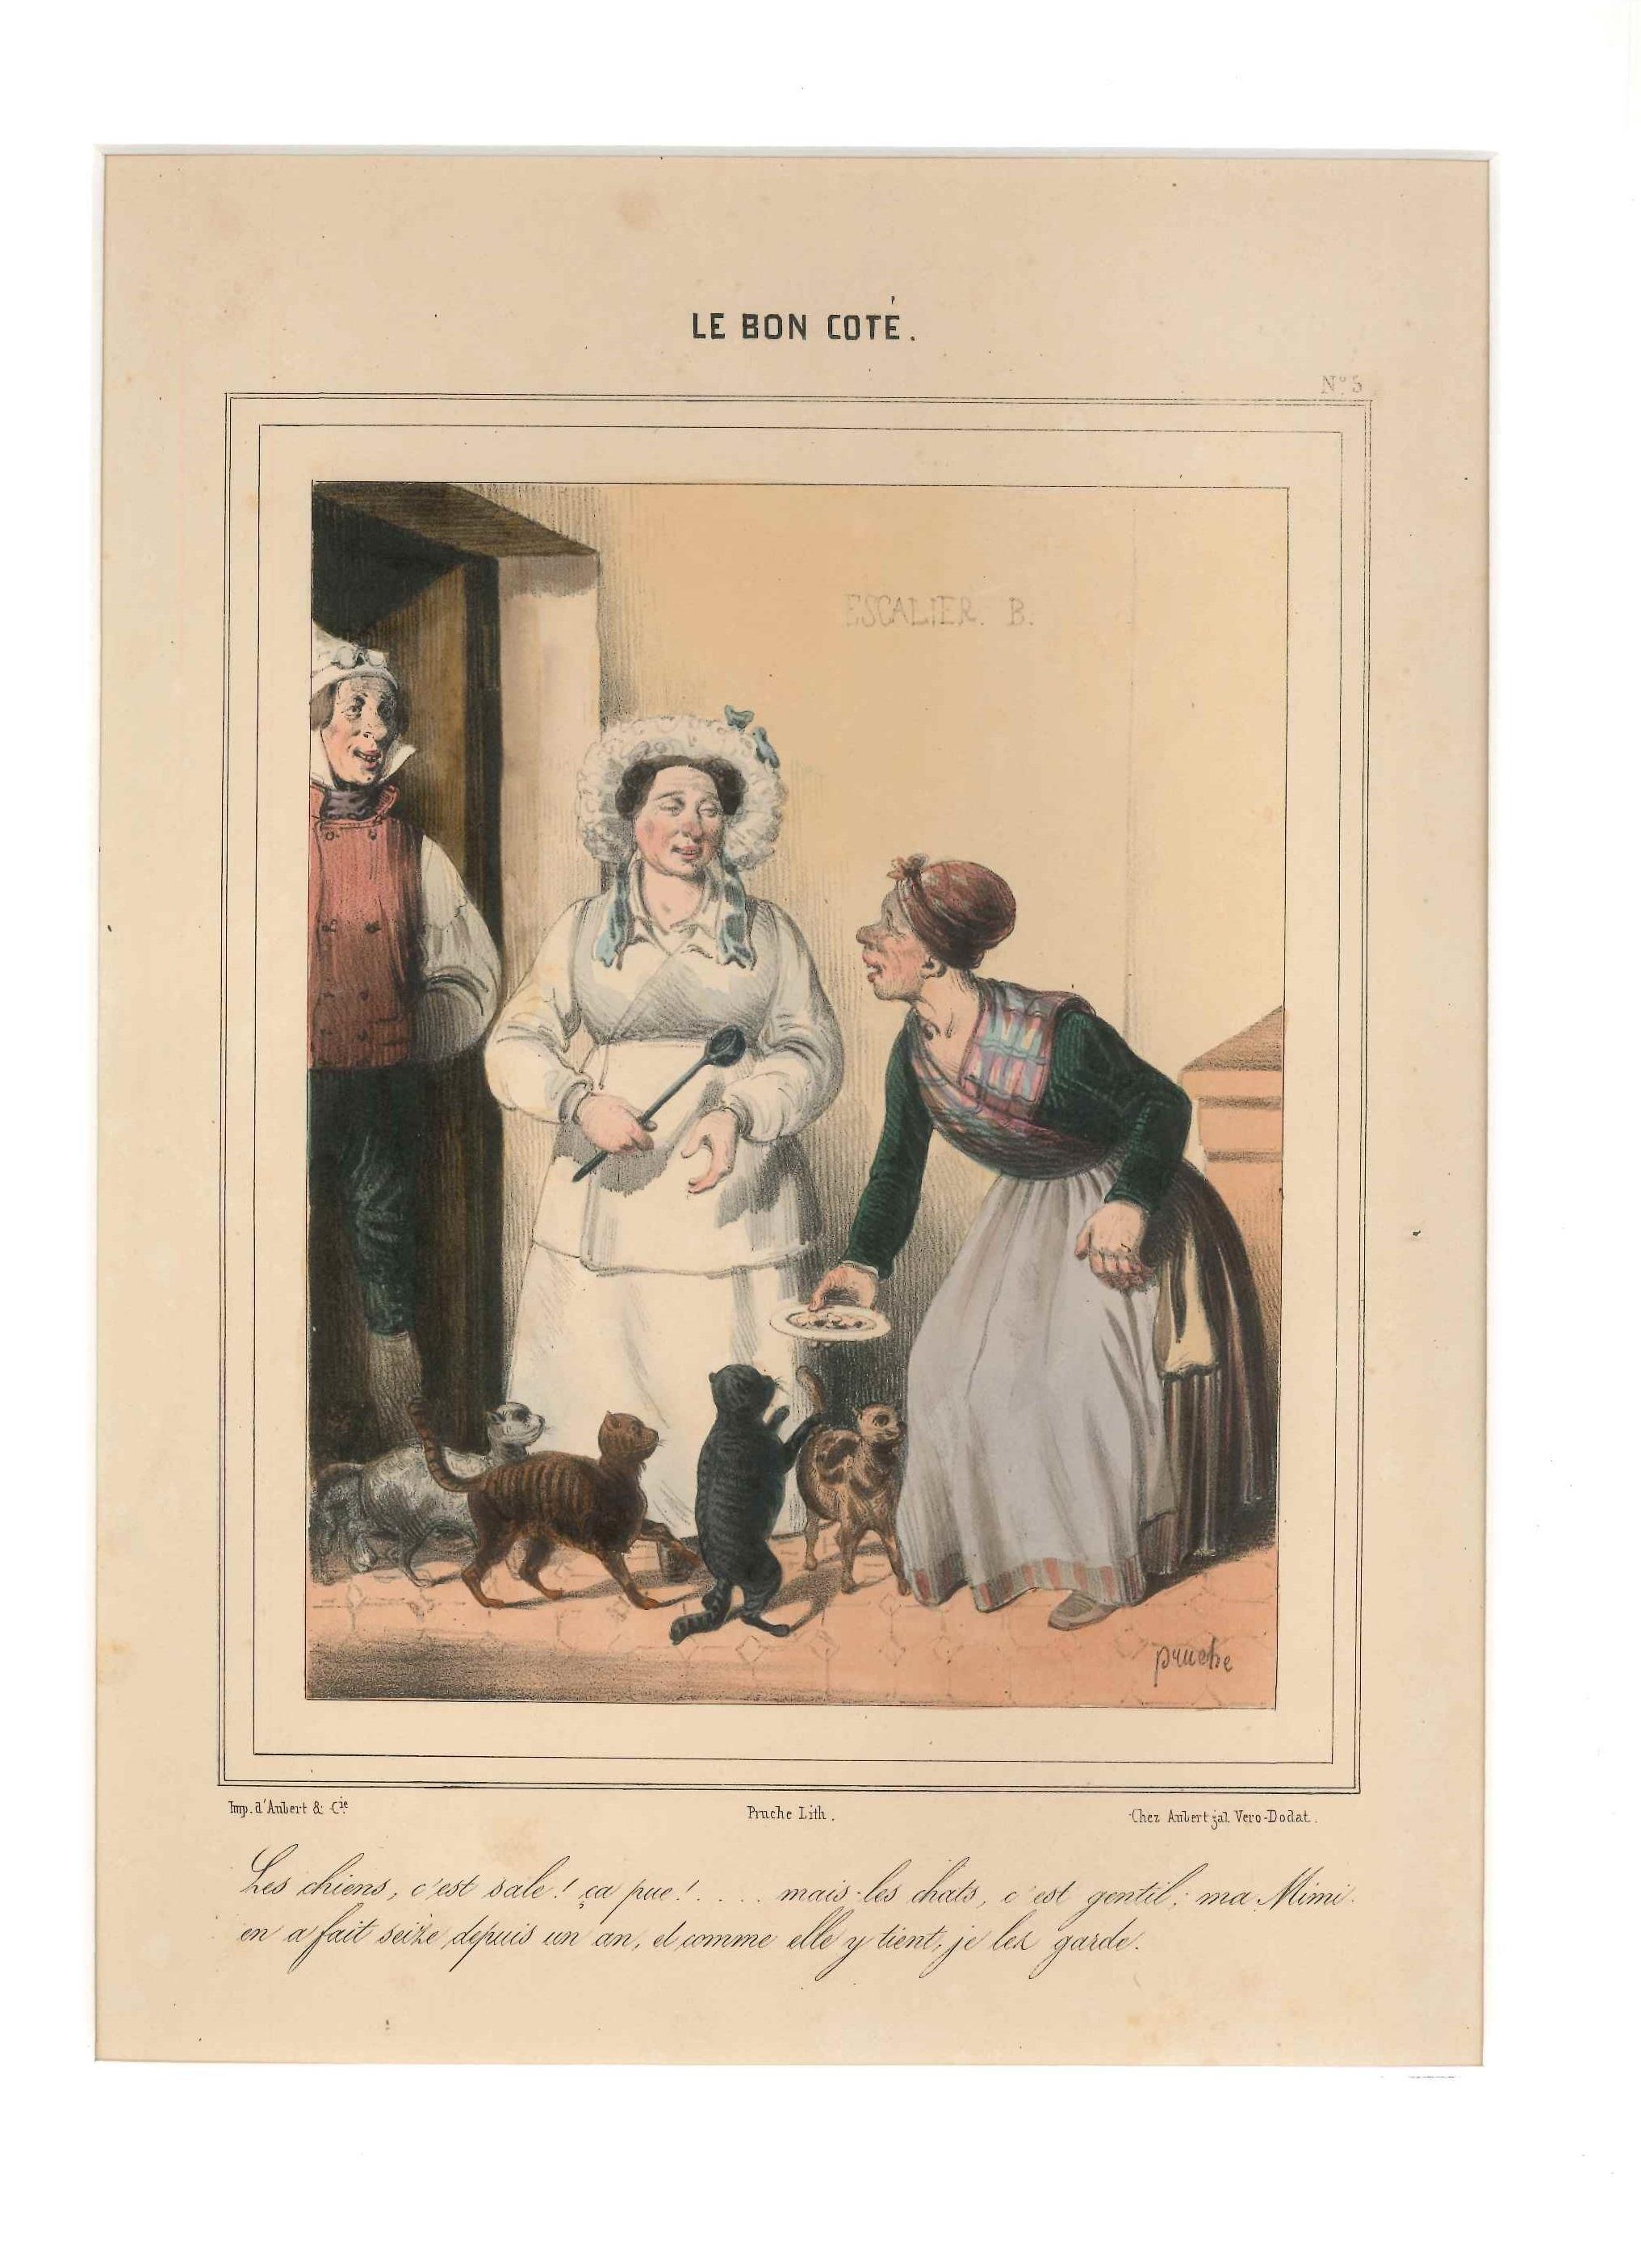 Clément Pruche Figurative Print - Le Bon Coté - Original Lithograph by C. Pruche - 1840 ca.